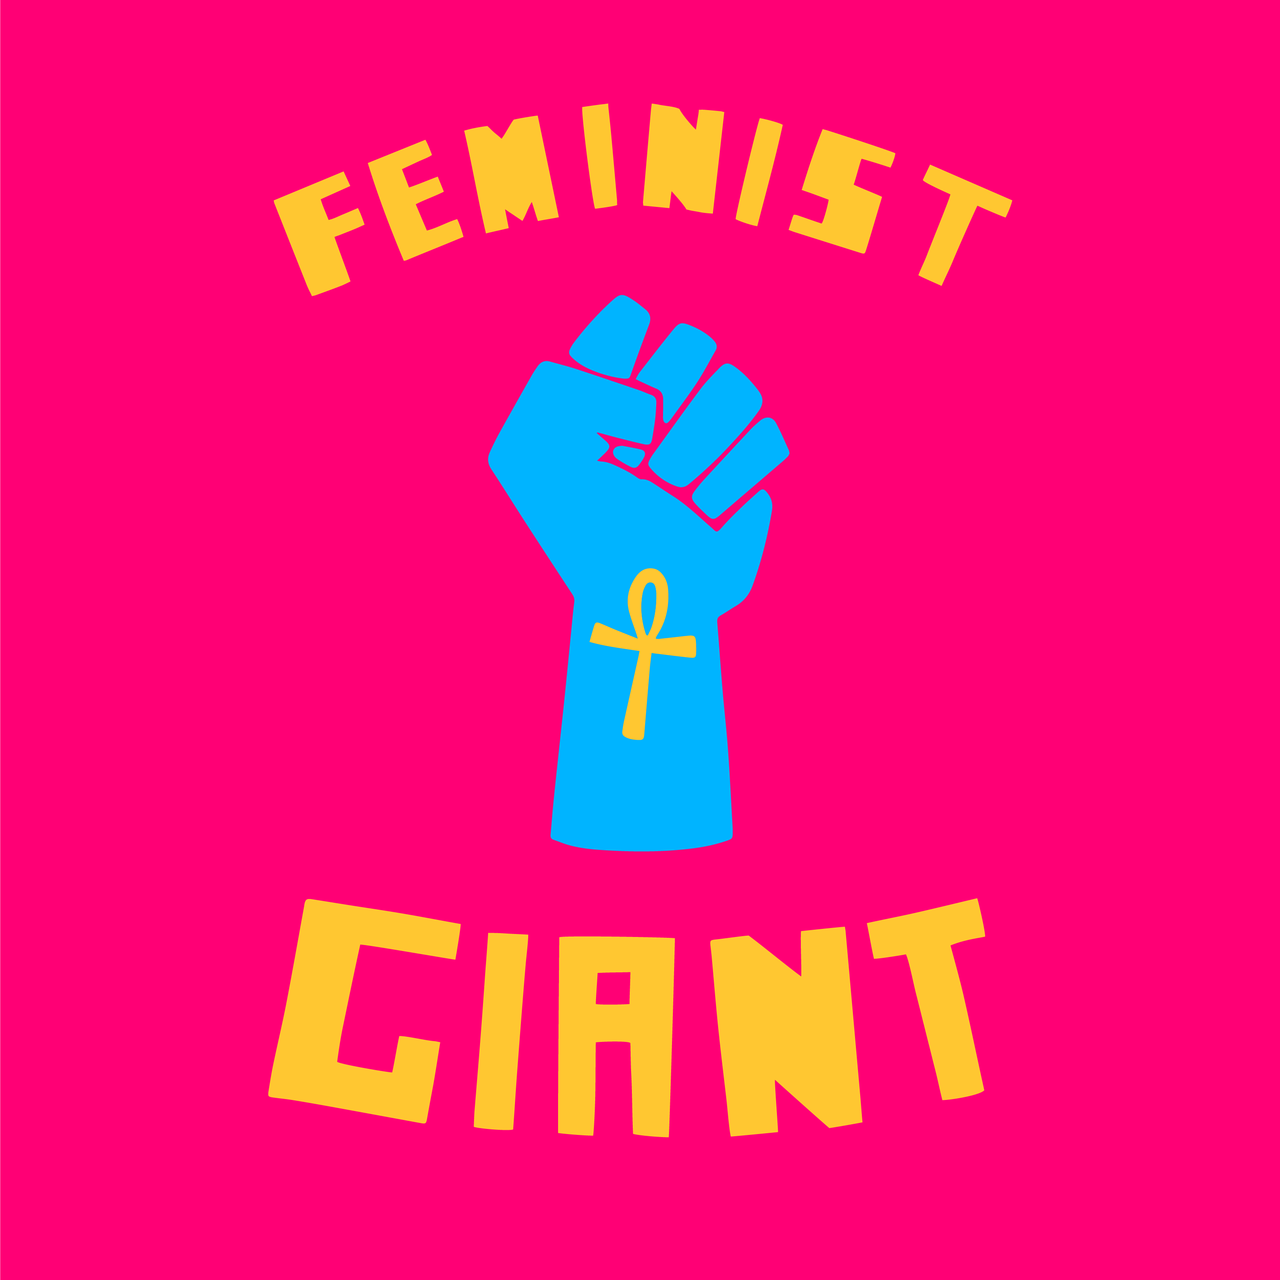 Artwork for FEMINIST GIANT